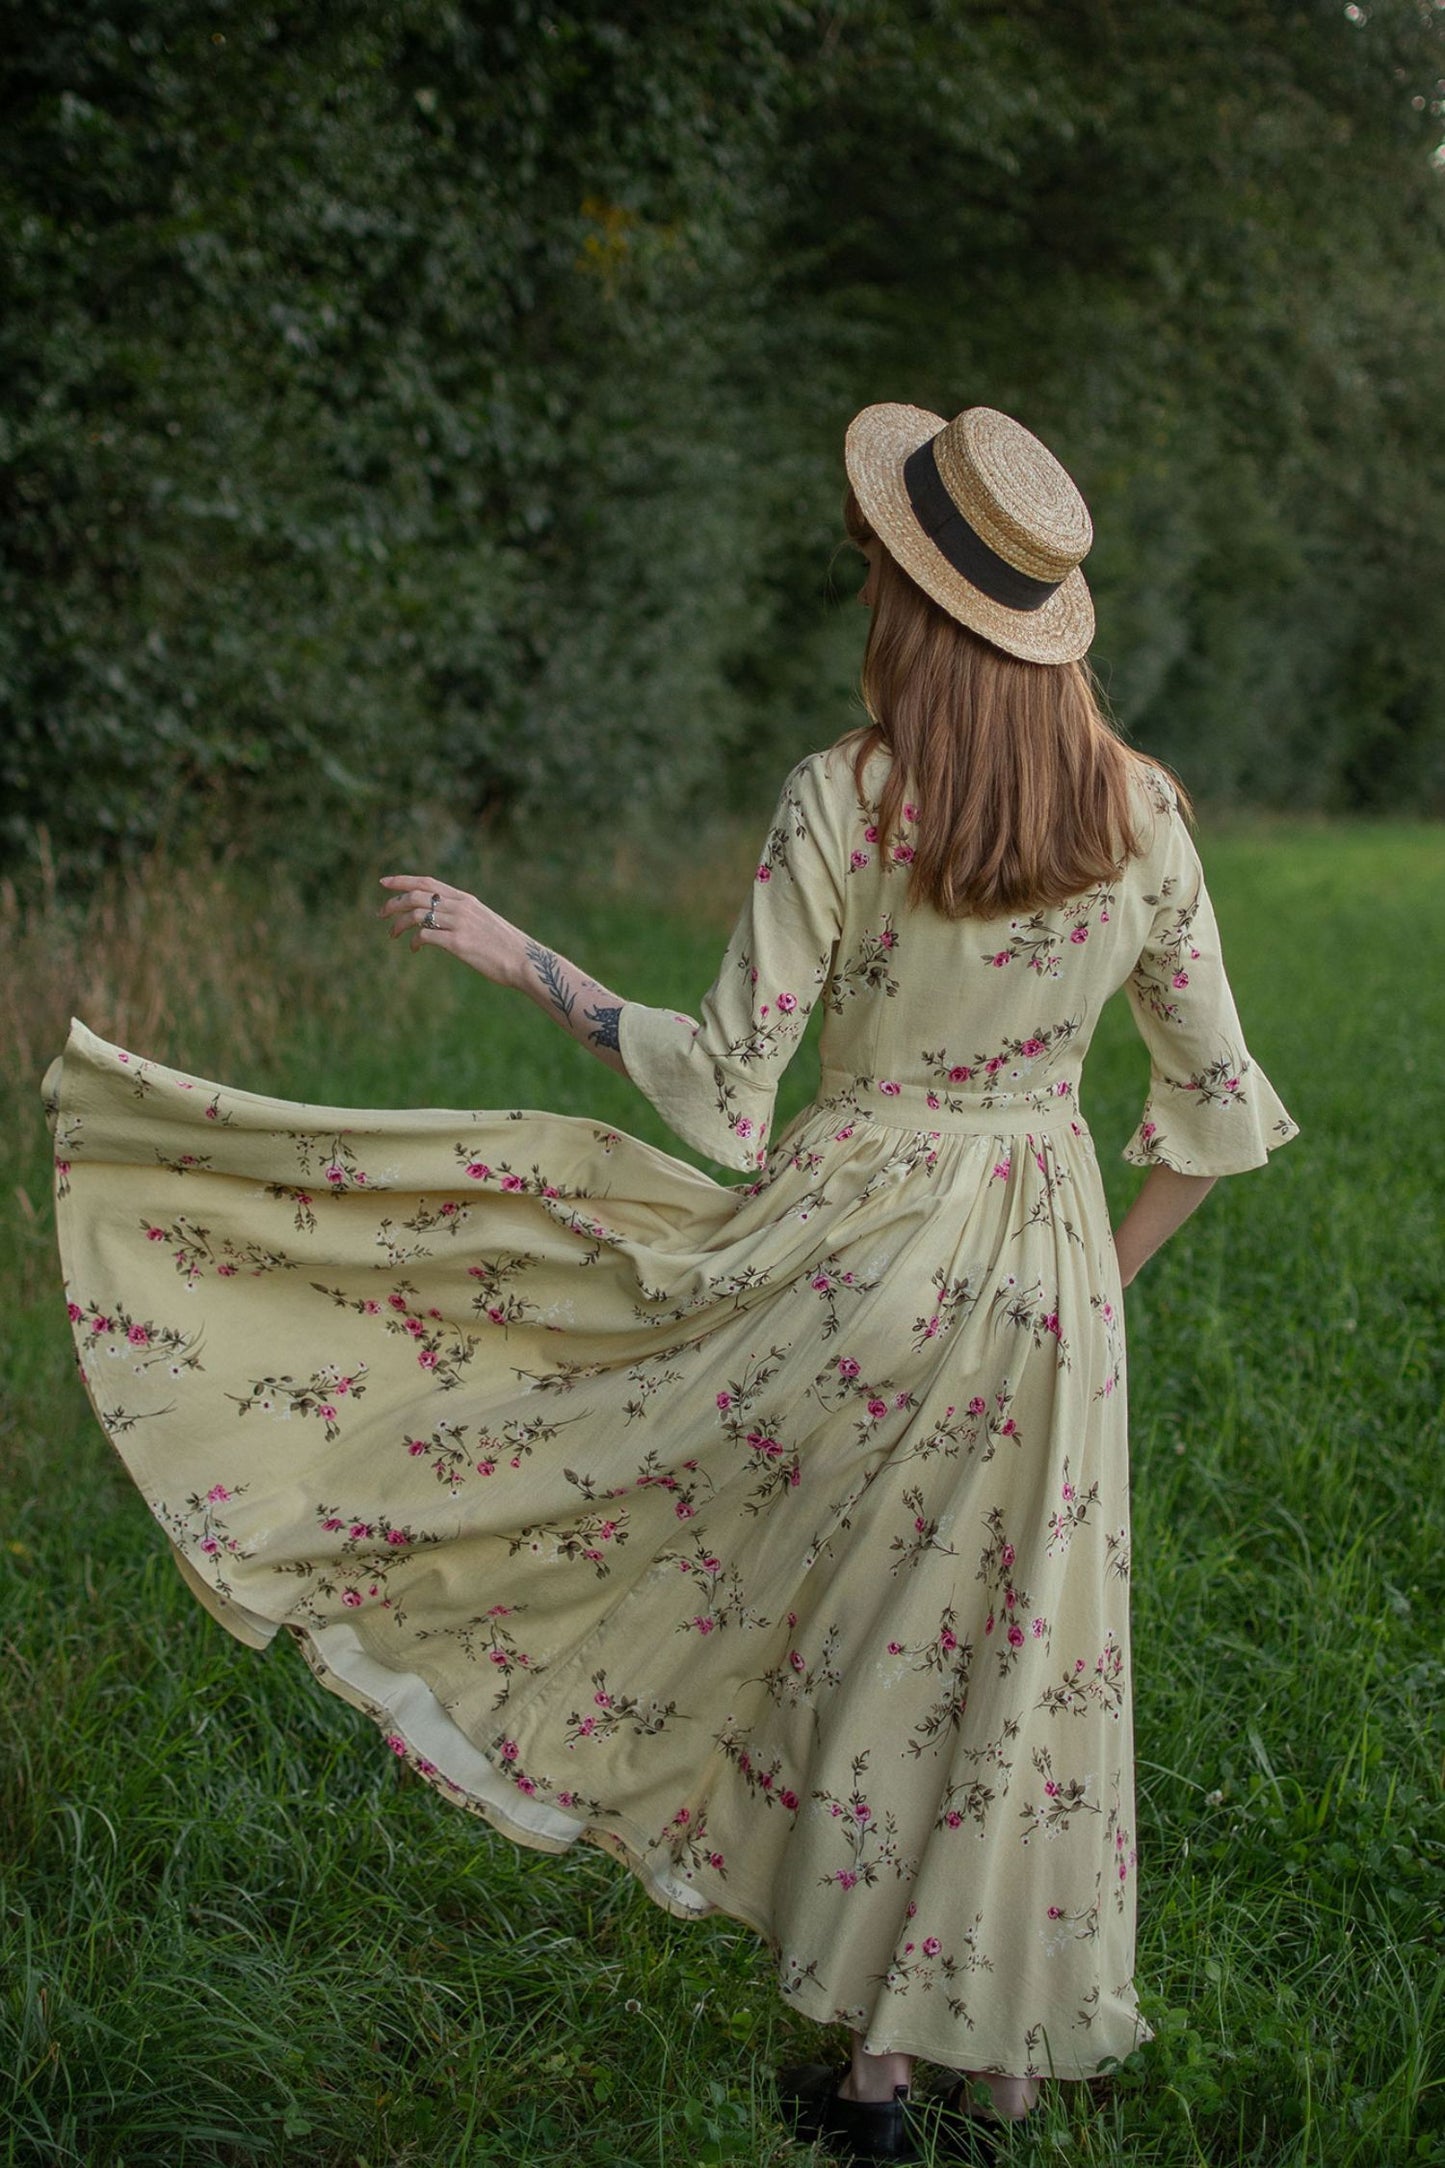 Vintage Inspired Floral Cottagecore Dress 3053